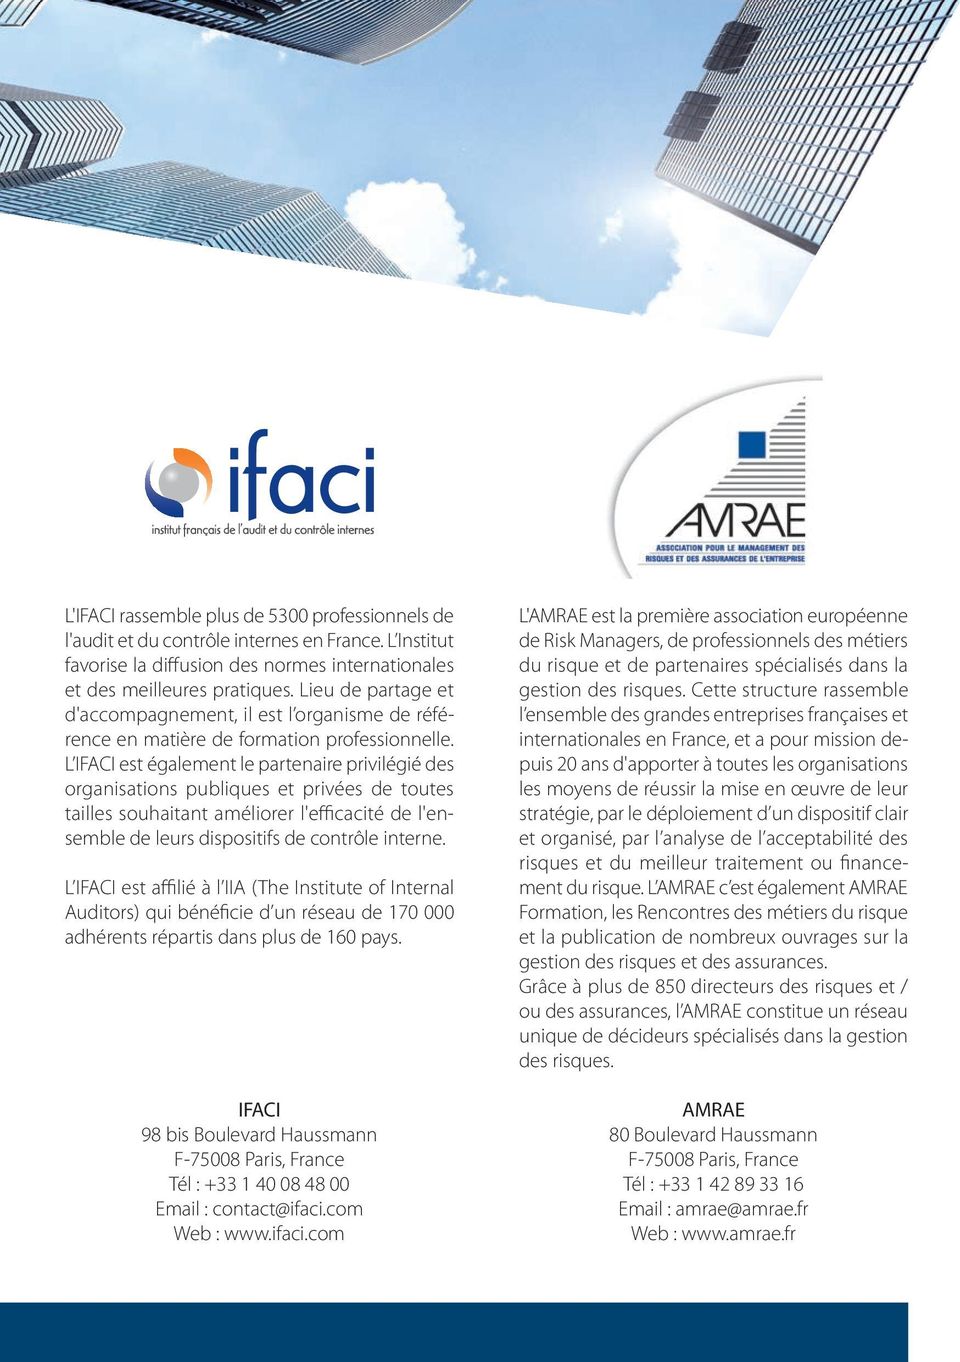 L IFACI est également le partenaire privilégié des organisations publiques et privées de toutes tailles souhaitant améliorer l'efficacité de l'ensemble de leurs dispositifs de contrôle interne.